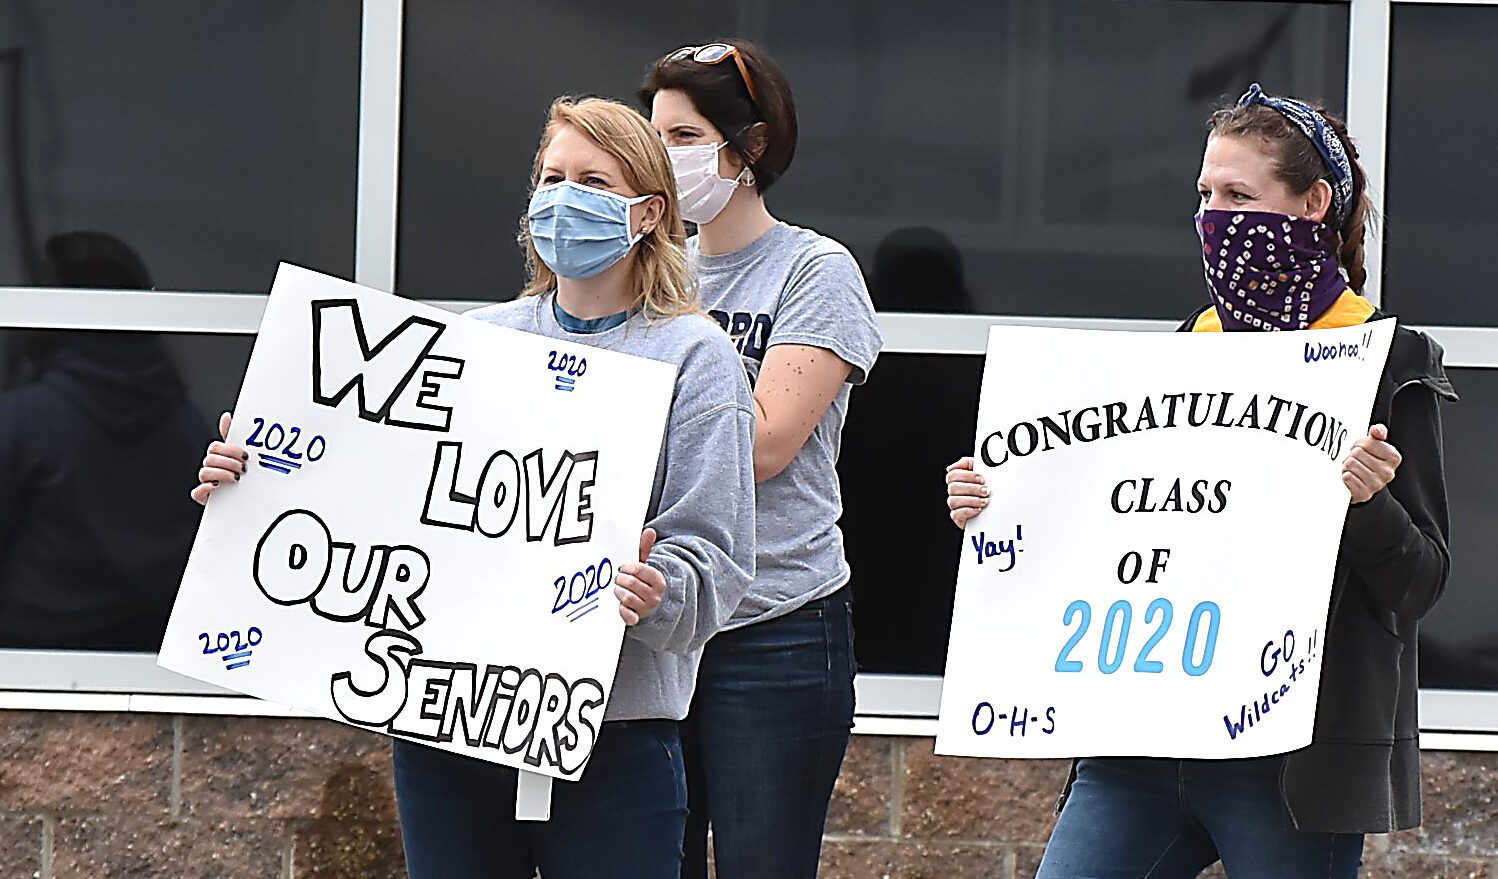 Teachers Lauren Jasinski and Kathryn Blaszczyk held signs